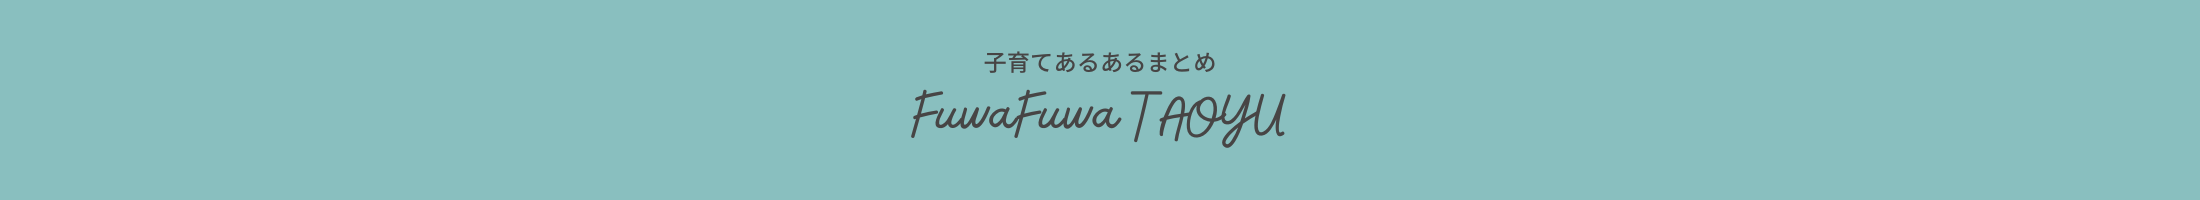 FuwaFuwaTAOYU